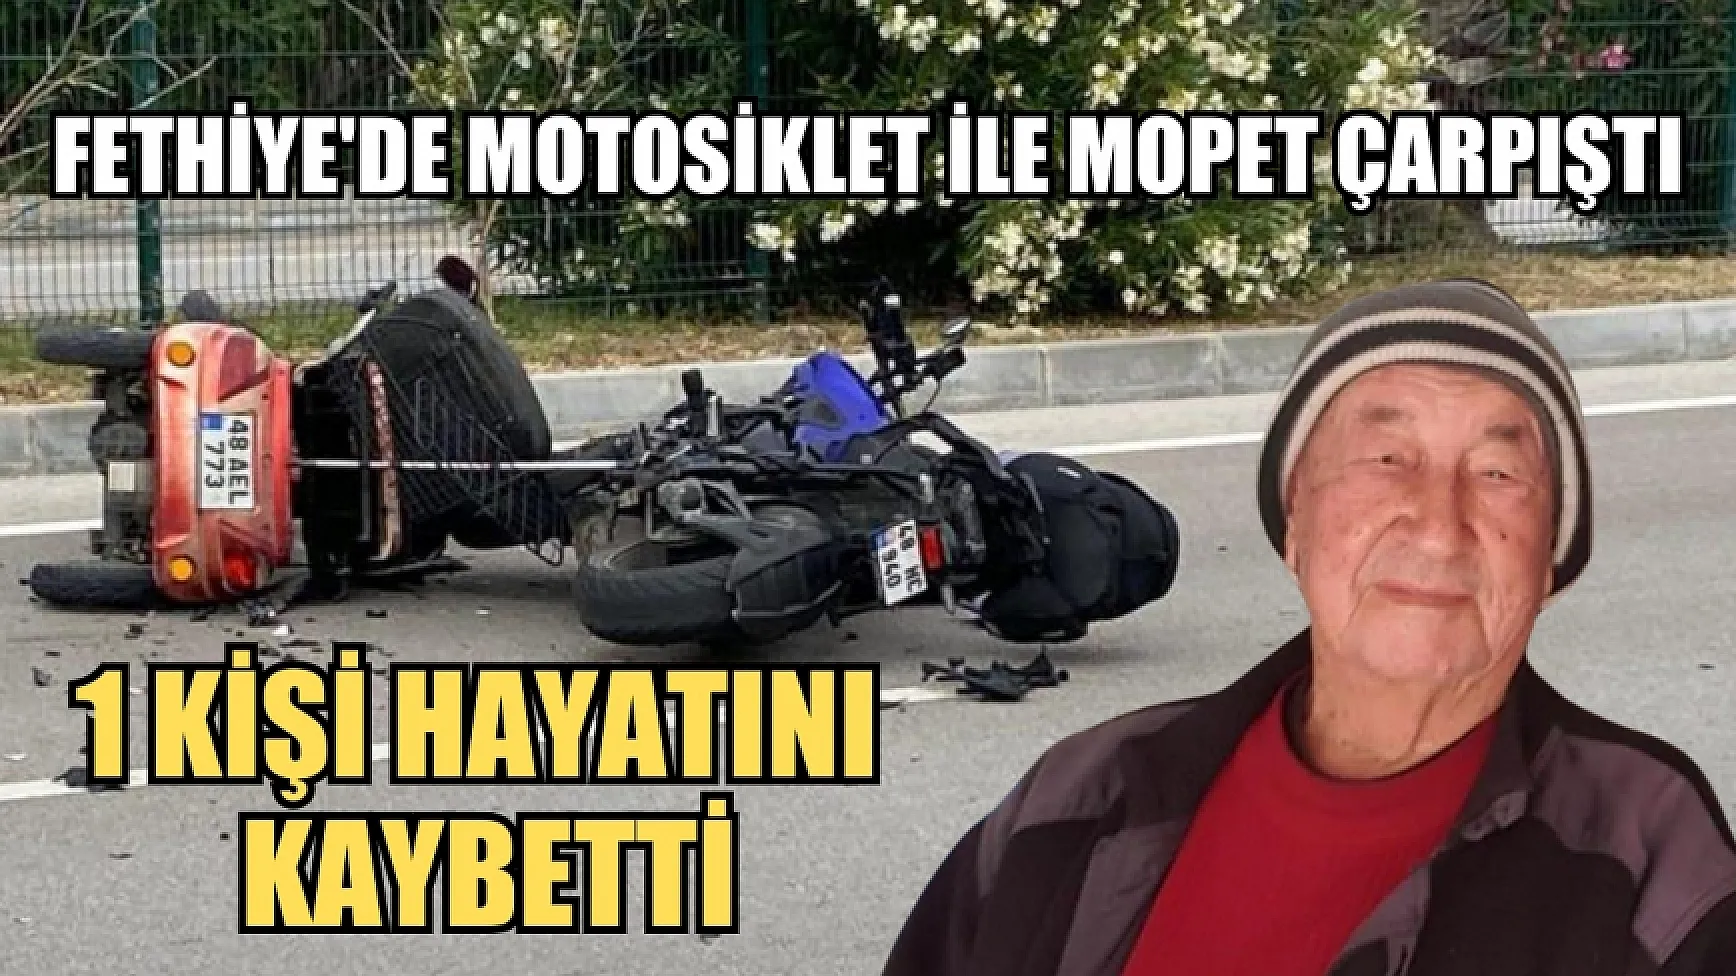 Fethiye'de Motosiklet ile Mopet çarpıştı, 1 kişi hayatını kaybetti